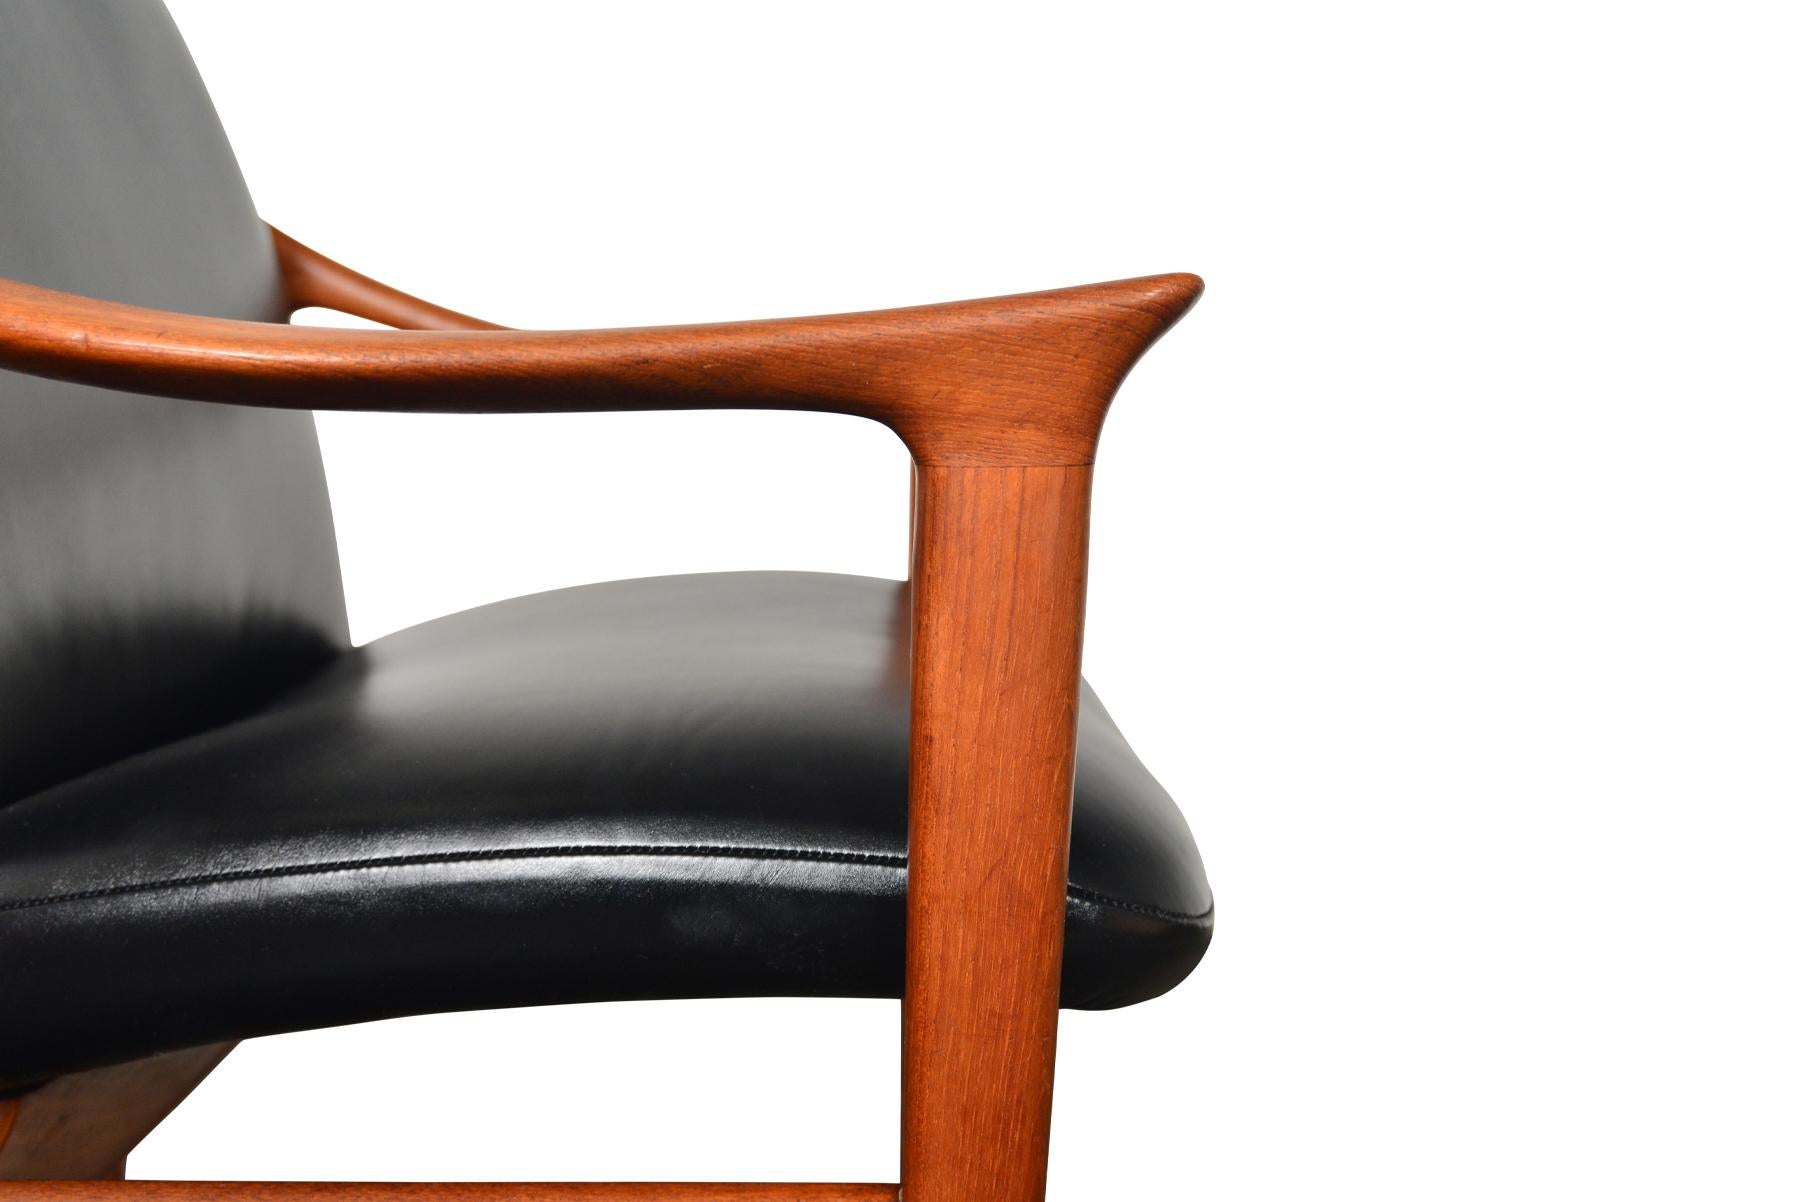 Plated Fredrik Kayser Norwegian Teak Lounge Chair, Produced by Vatne